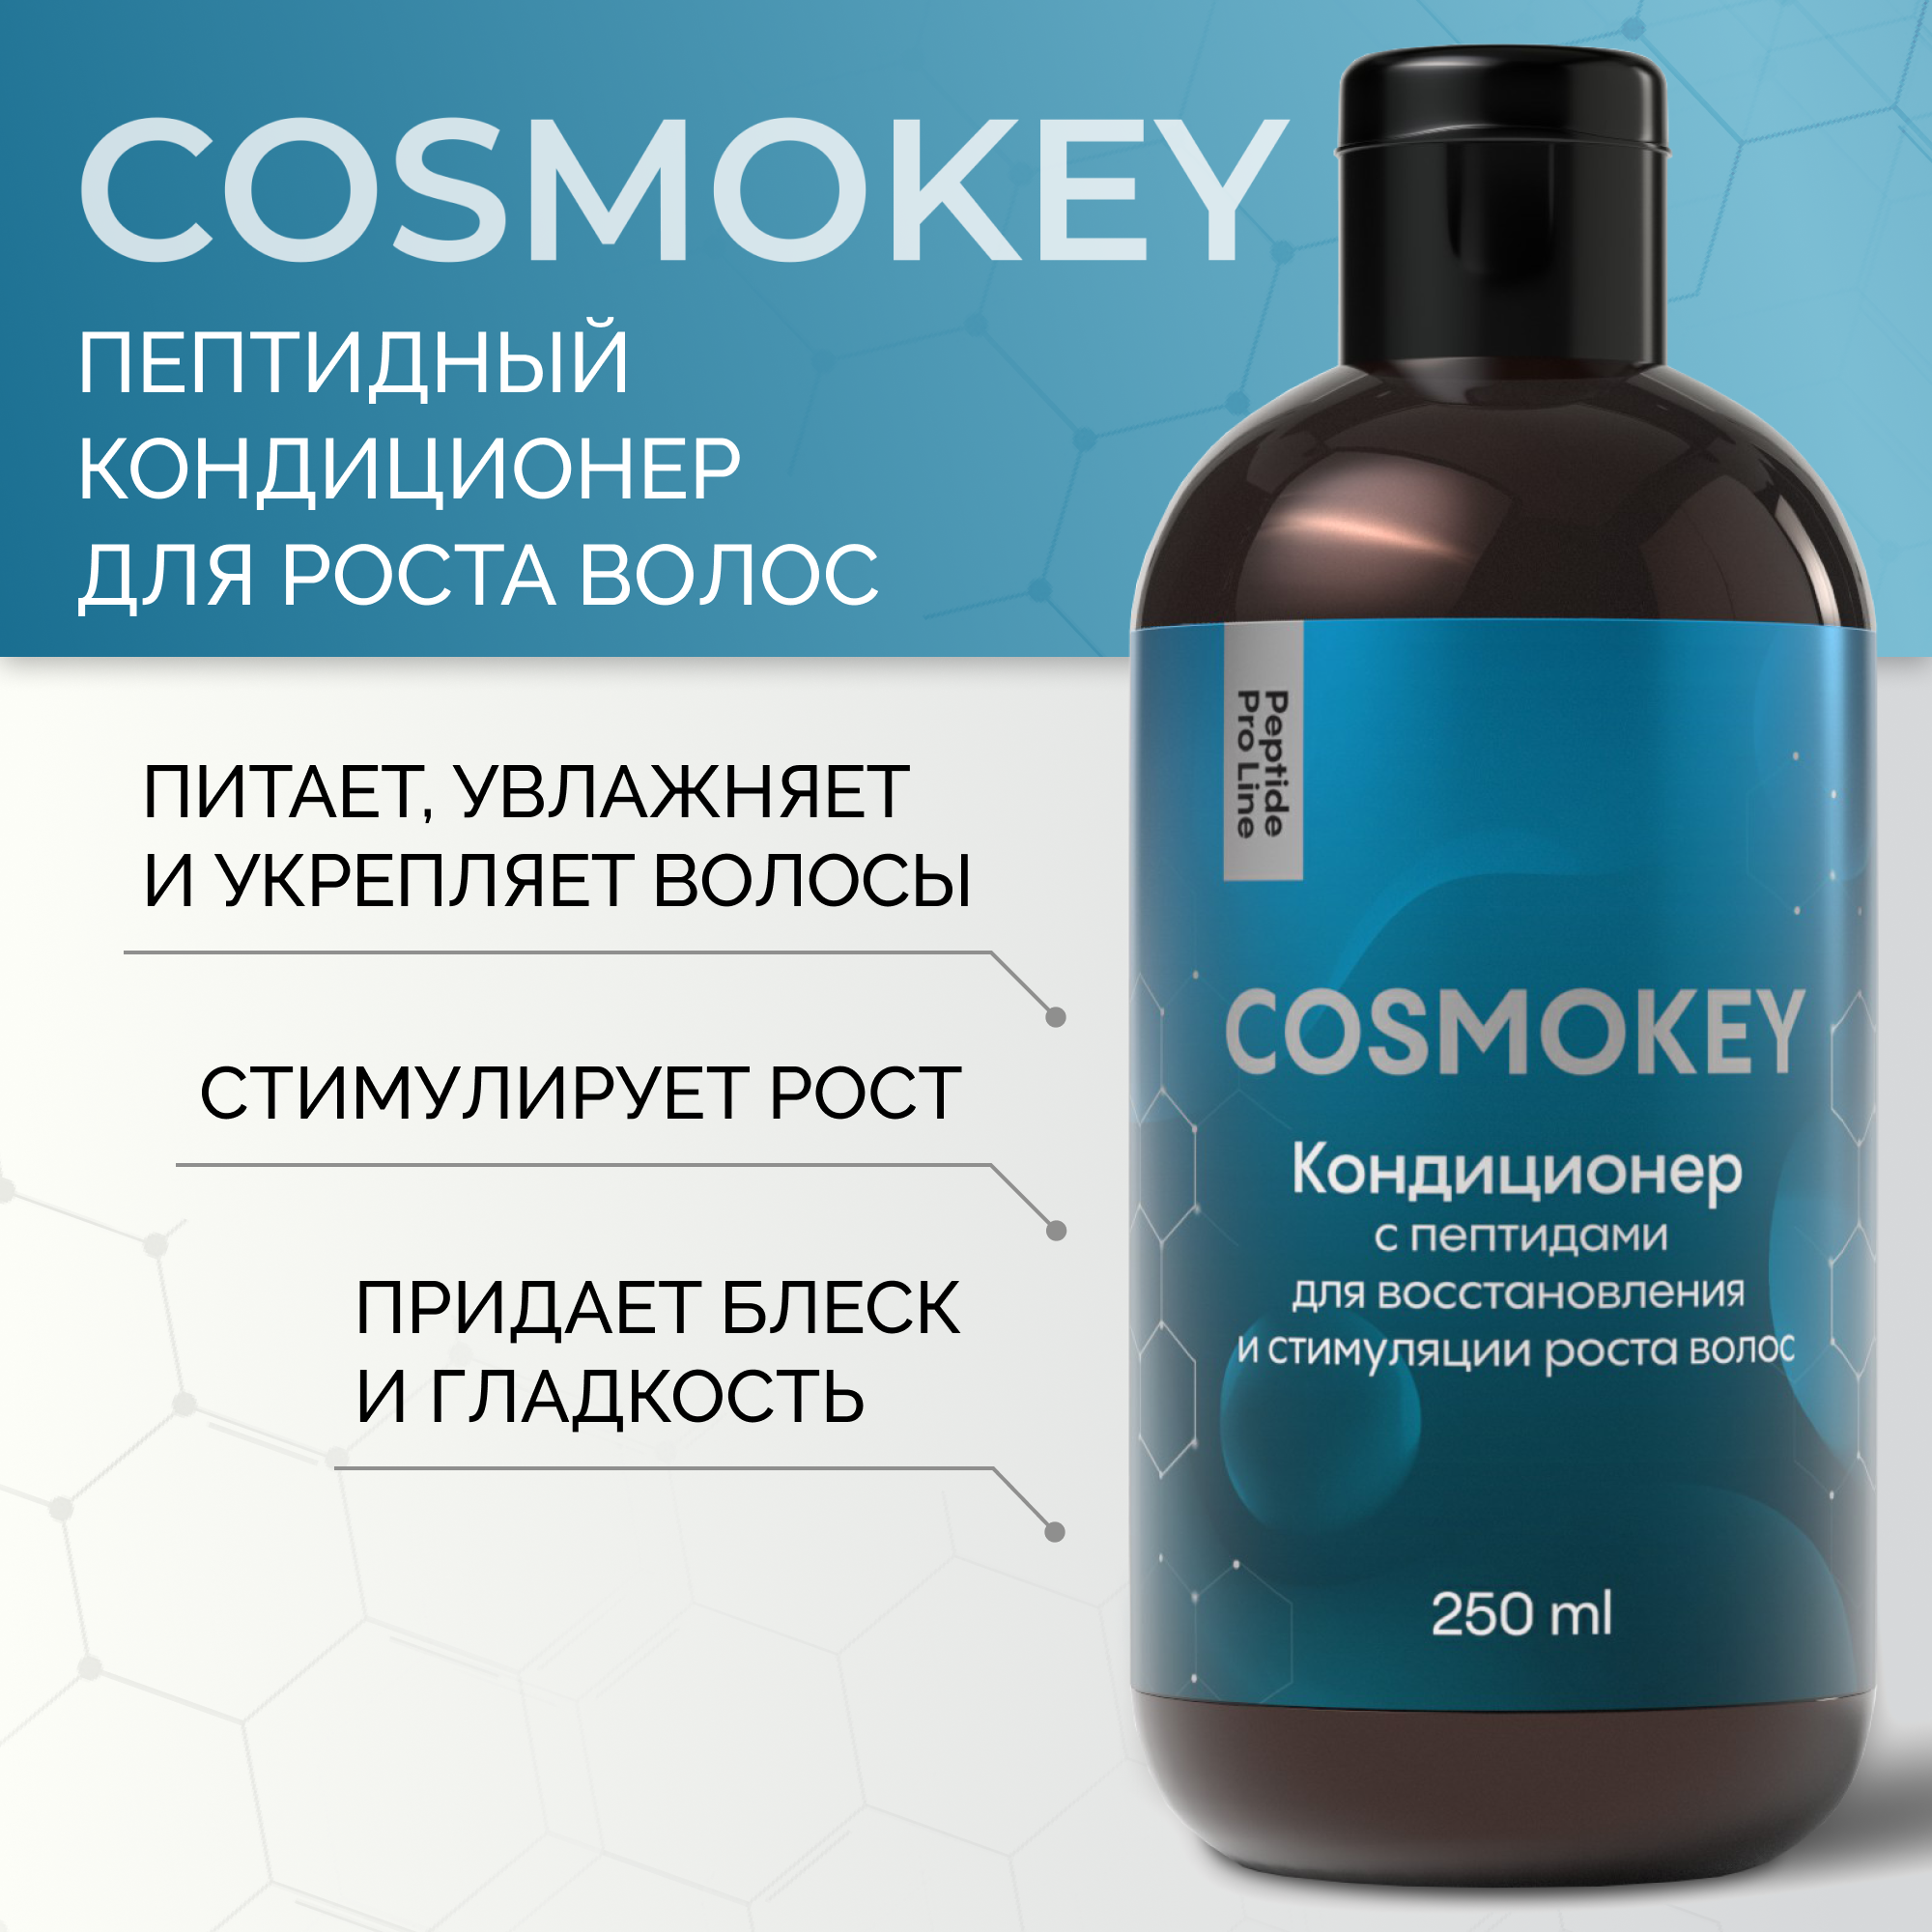 Кондиционер Cosmokey Космокей с пептидами для восстановления роста волос 250 мл кондиционер для вьющихся волос и волос с химической завивкой ш4096 shcdes46 250 мл